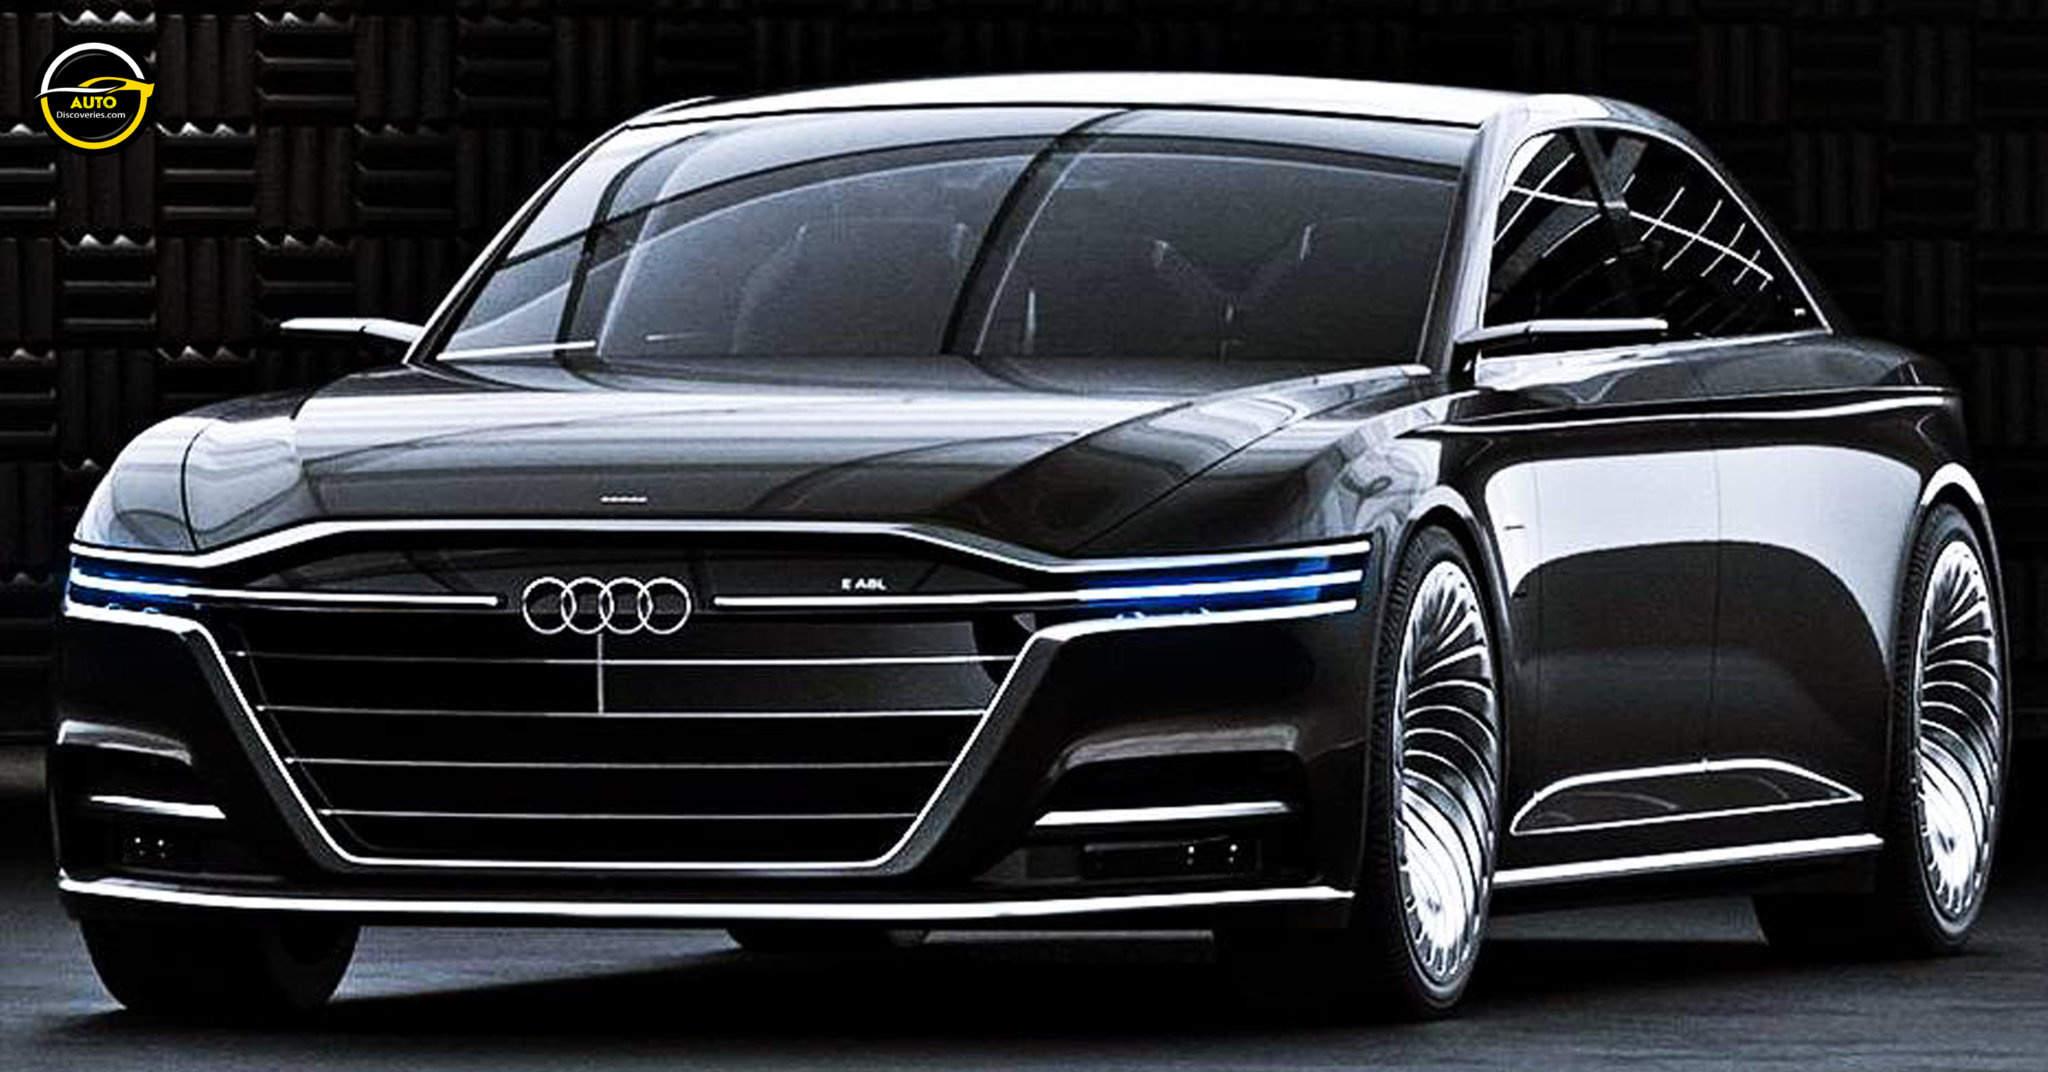 2025 Audi A8l Next Generation Designed By Aven Shi Au - vrogue.co